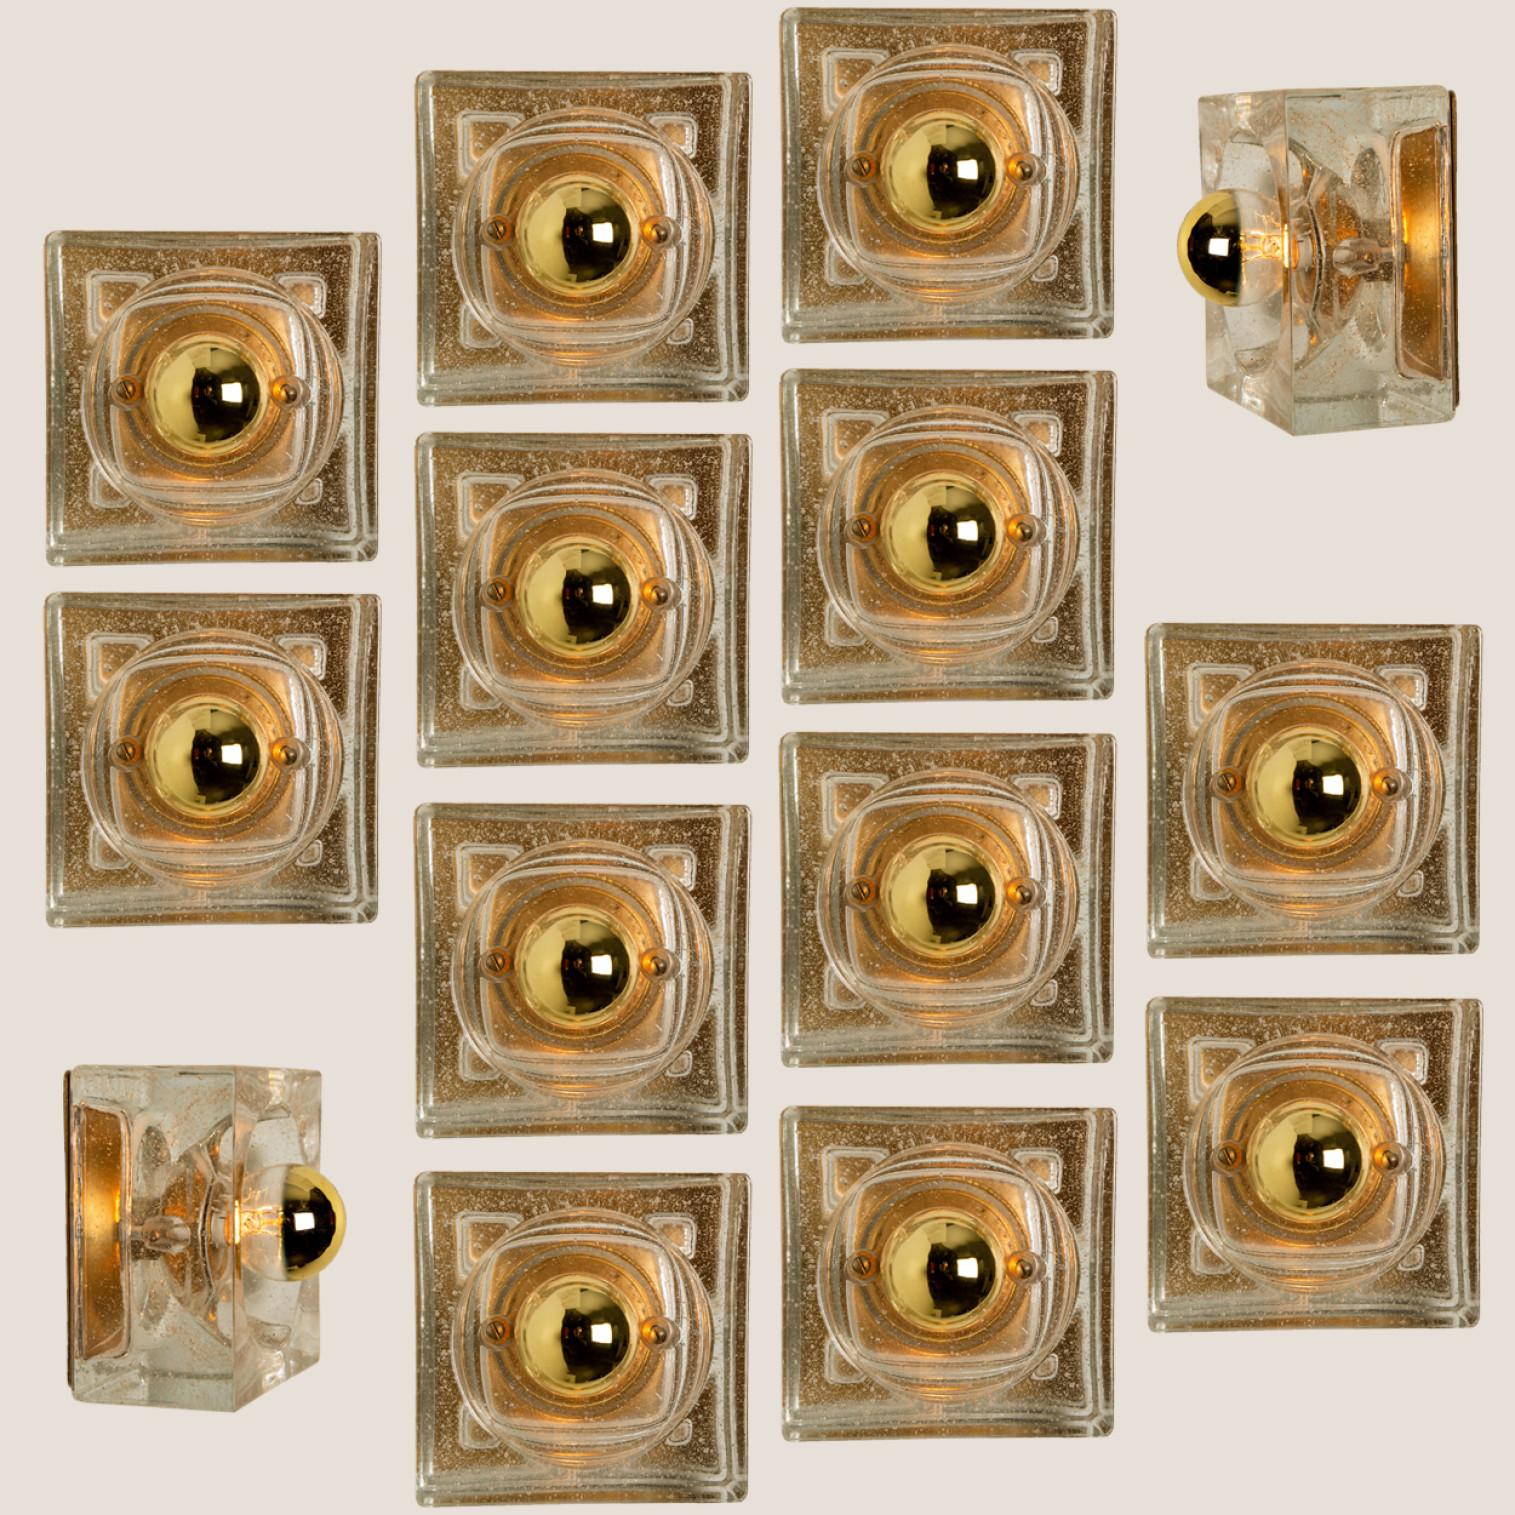 Diese Leuchten sind aus dickem mundgeblasenem Glas auf einer quadratischen, goldfarbenen Rückwand gefertigt. Das Glas erzeugt einen schönen Lichteffekt an der Decke, auf dem Tisch oder an der Wand. Jede Lampe hat eine E14-Fassung (max. 25 Watt)

Can